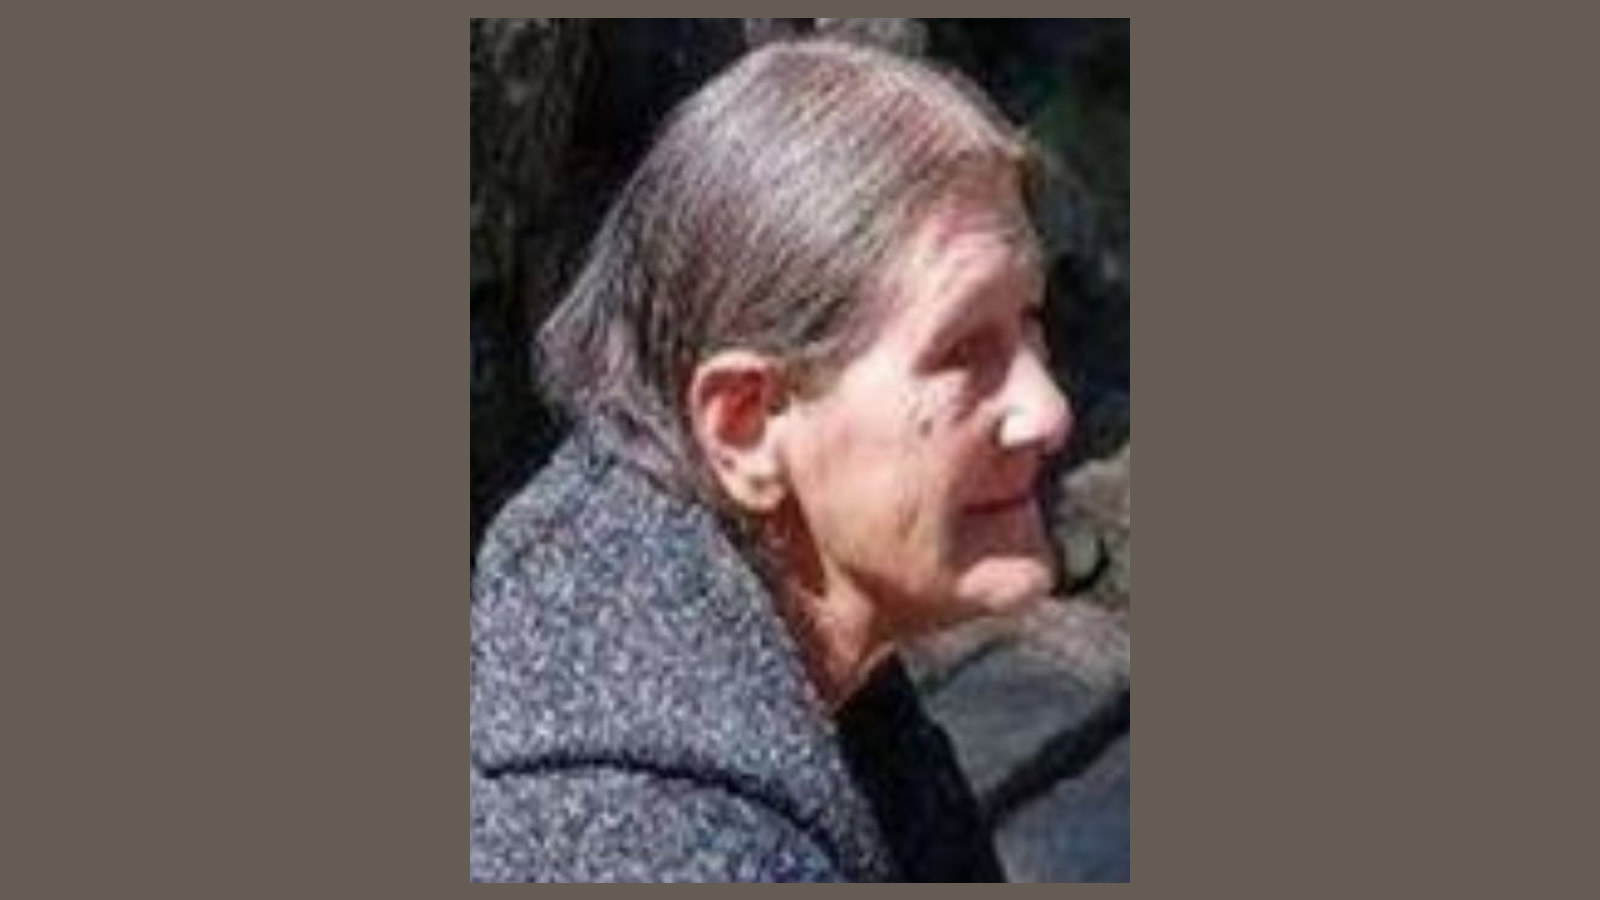 JCSO busca a mujer de 65 años desaparecida